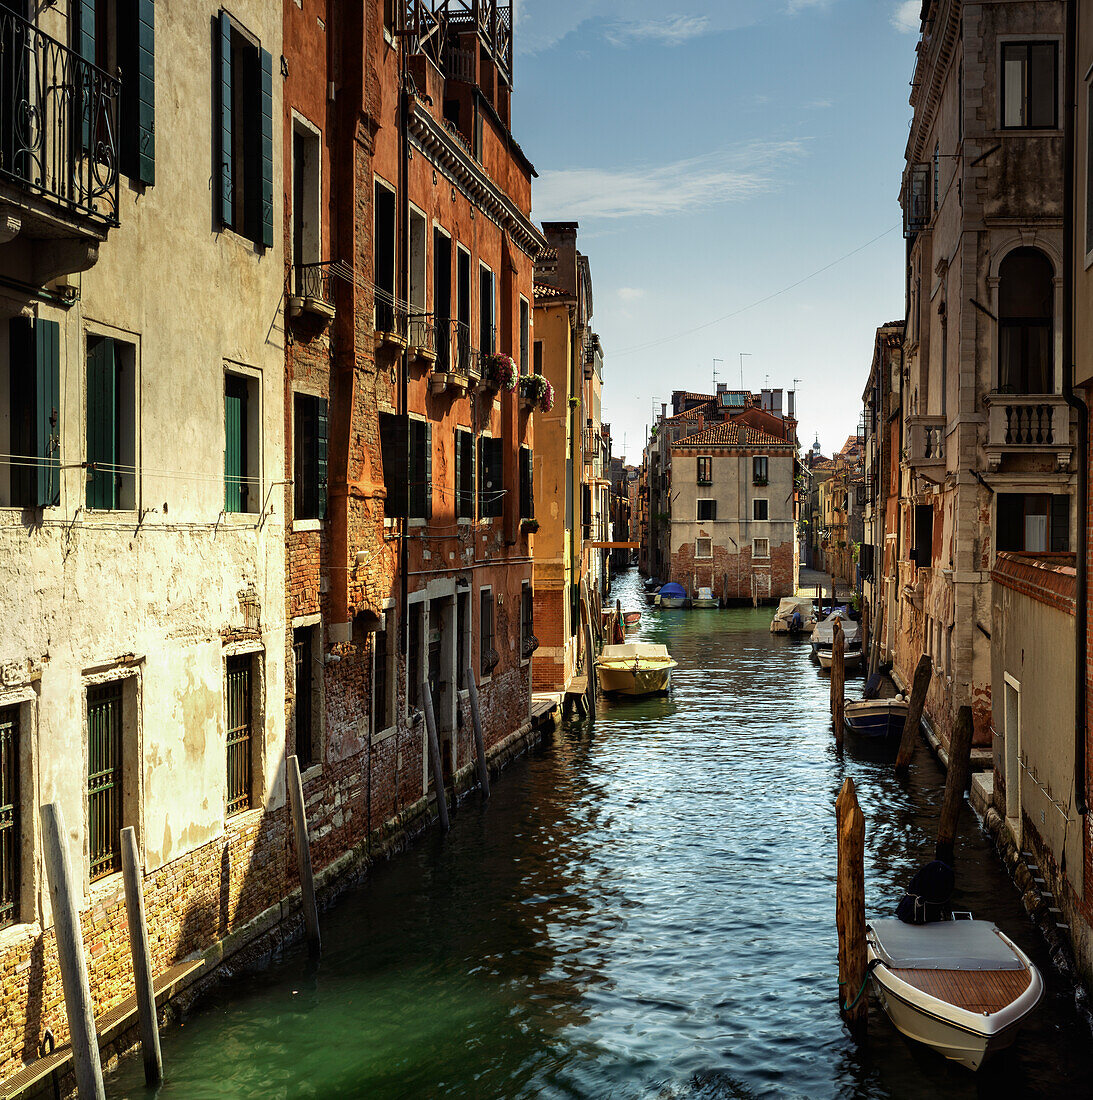 Fondamenta Nuove, typischer Kanal von Venedig, Venetien, Venedig, Italien, Europa, Südeuropa